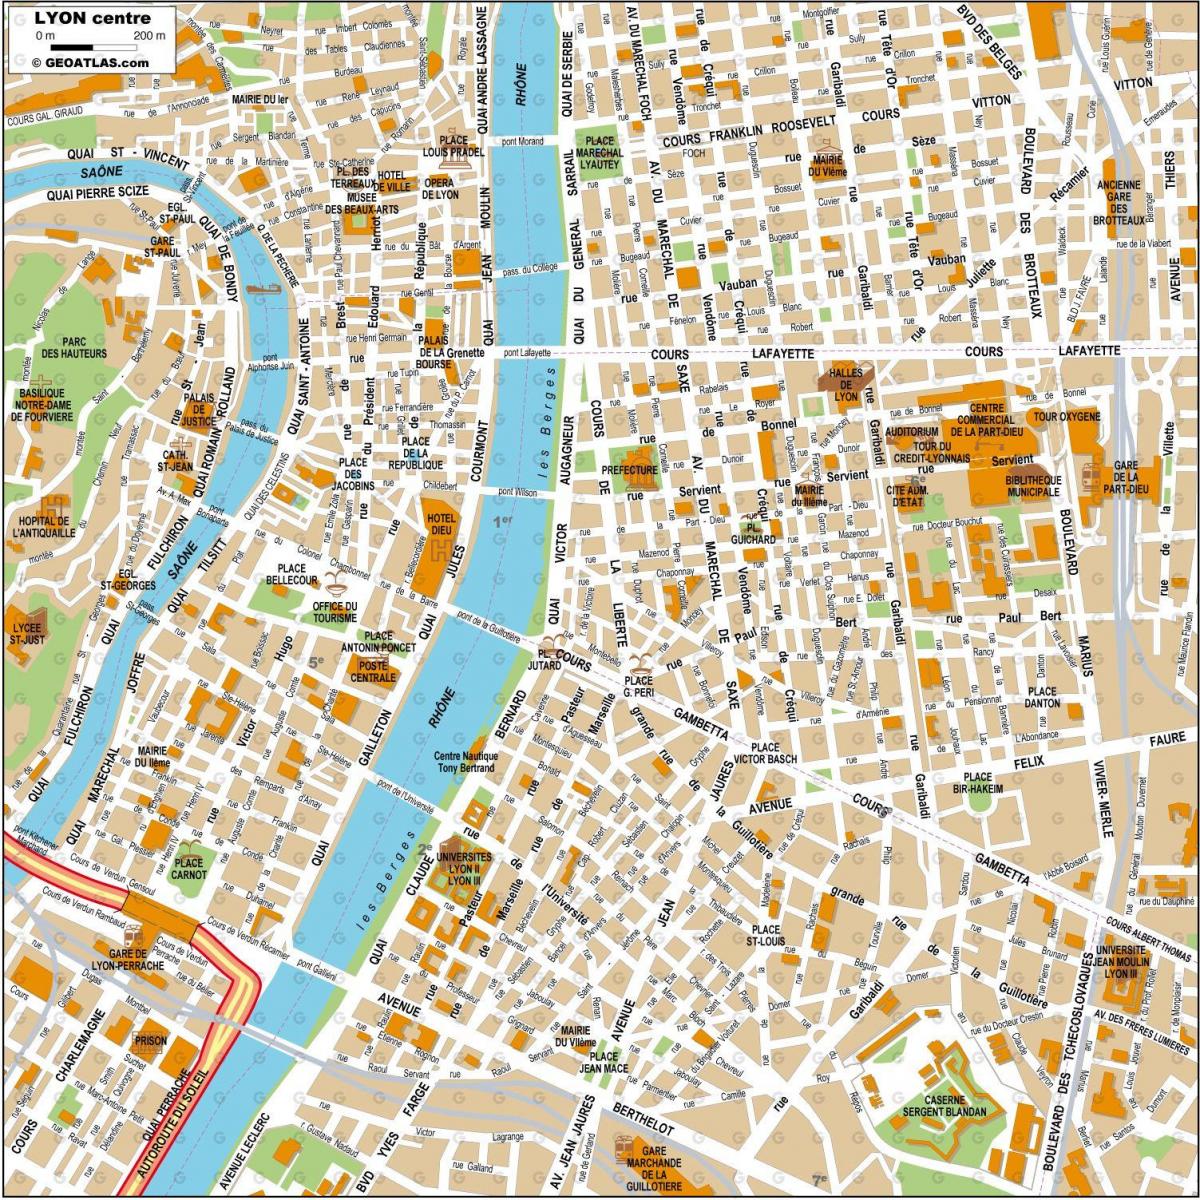 Mappa del centro di Lione